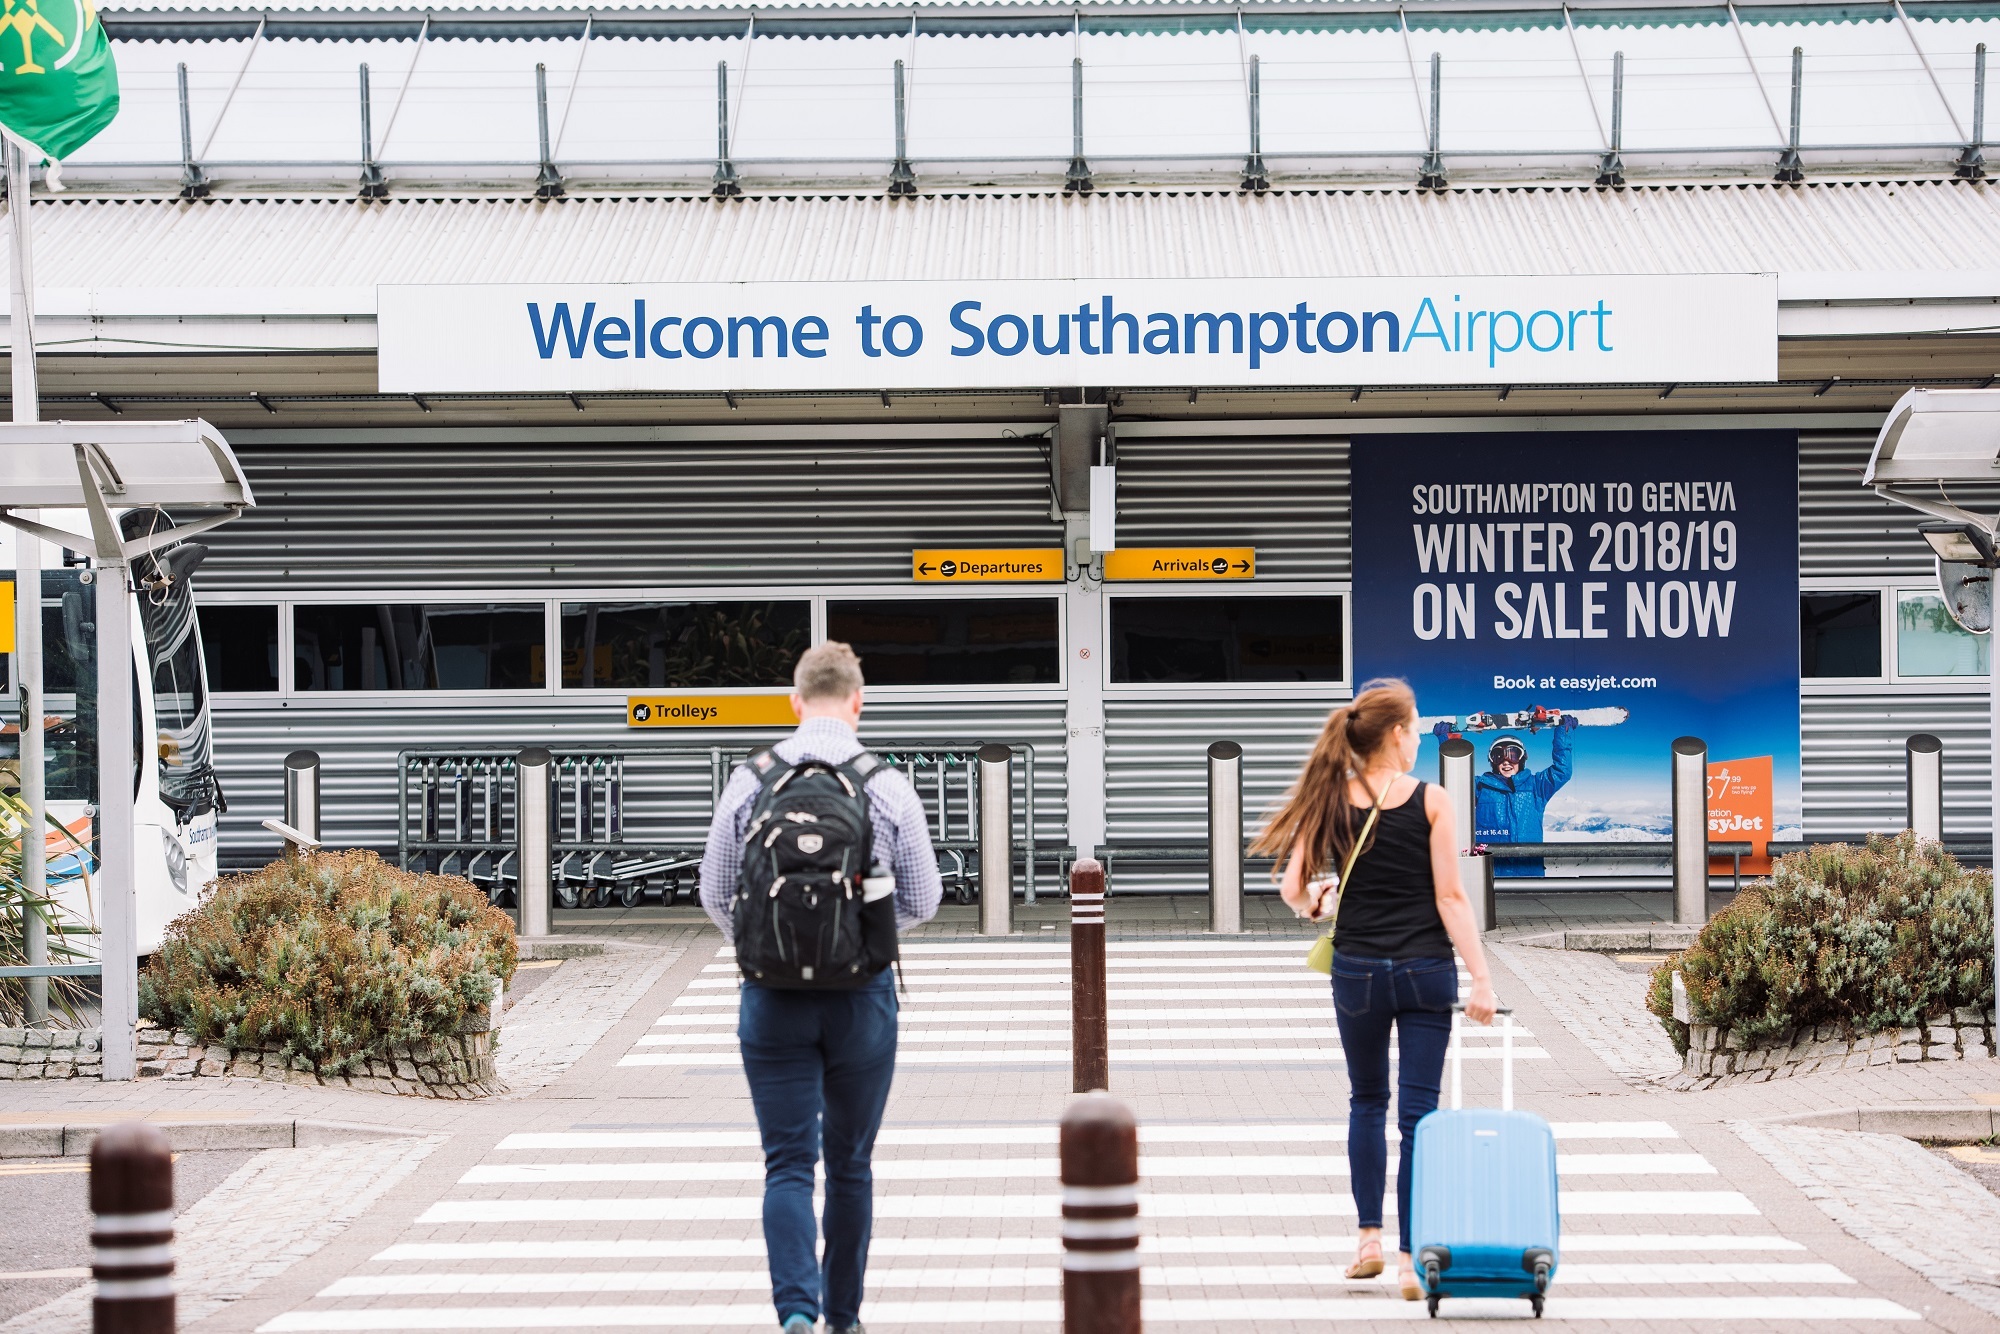 Αναζητούνται οι σκέψεις επέκτασης του διαδρόμου Southampton Airport